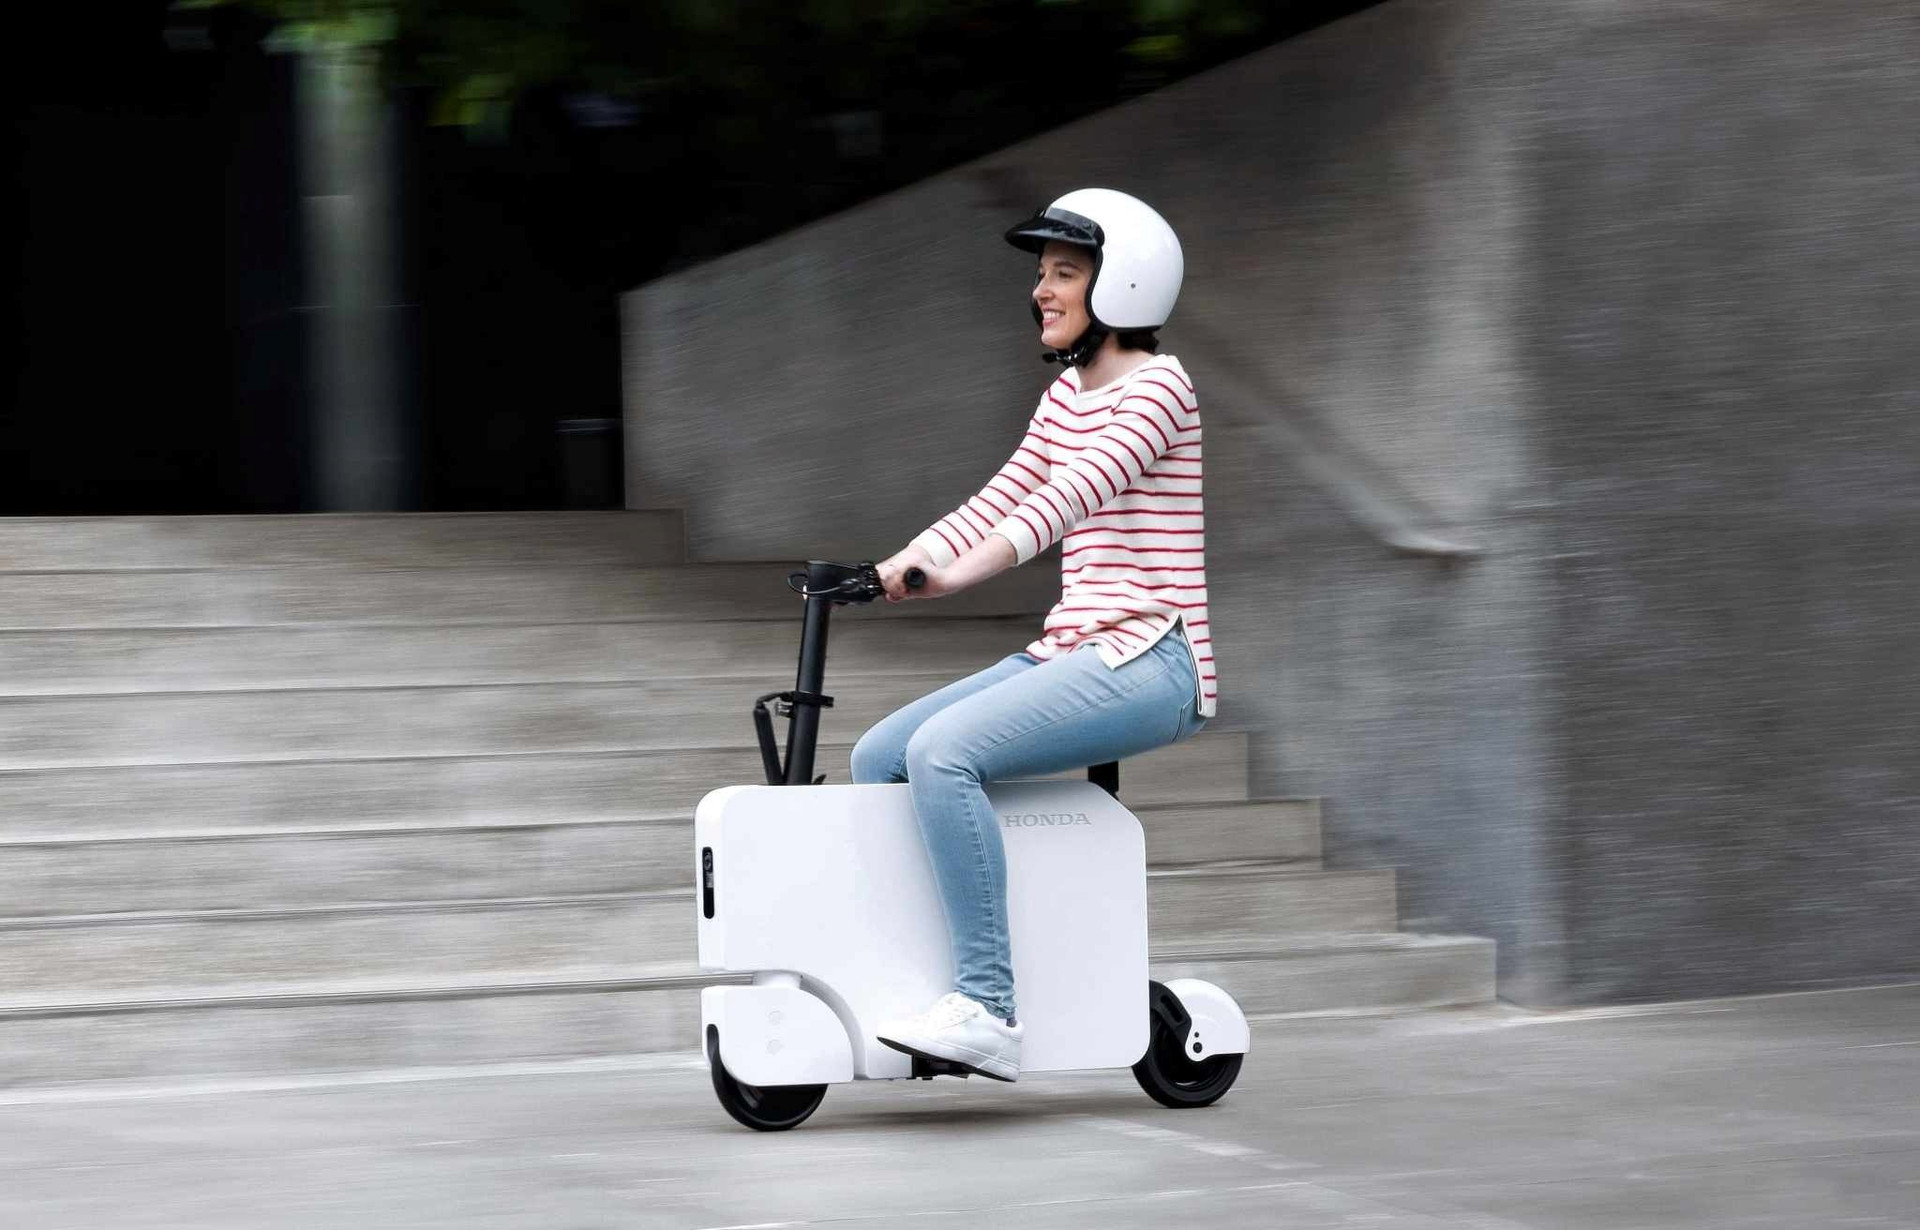 Honda bắt đầu bán mẫu scooter điện mini có một không hai: Gập gọn như 1 chiếc vali, giá dưới 1.000 USD - Ảnh 1.